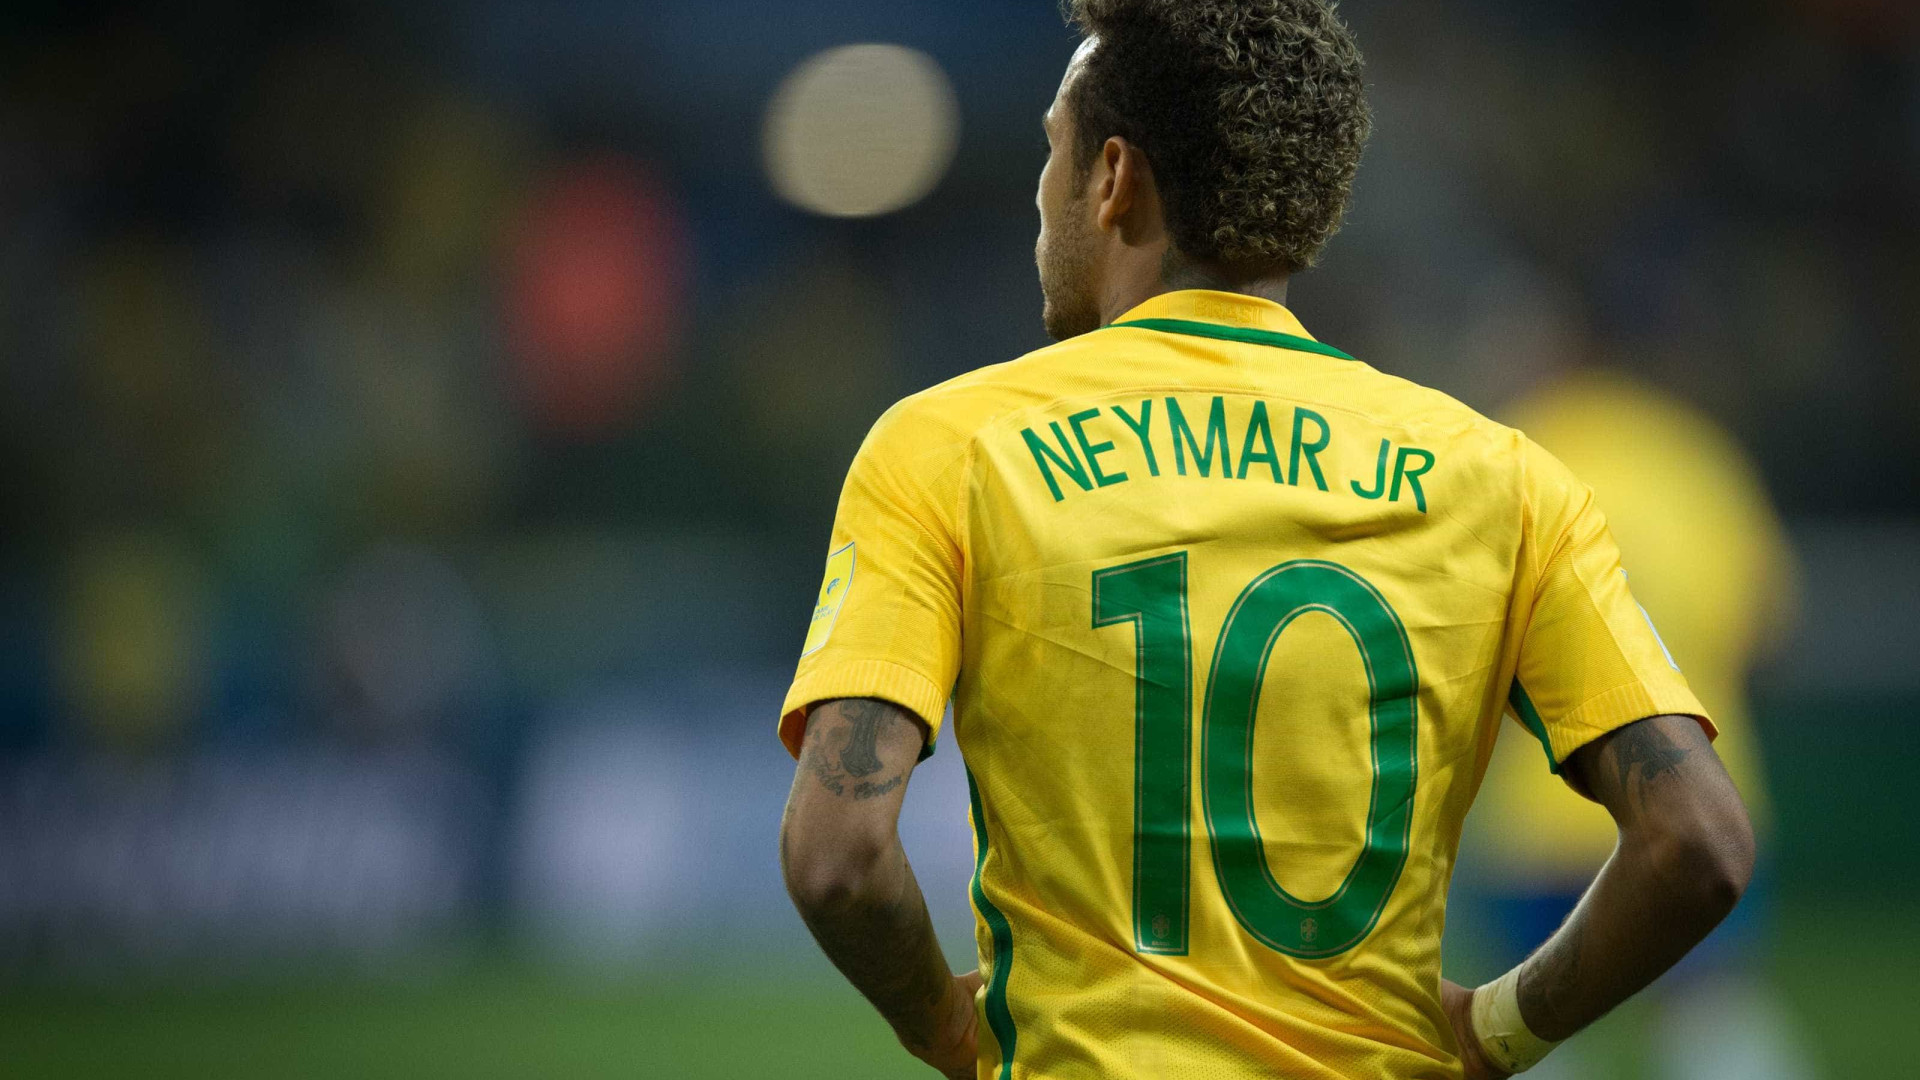 Emprego dos sonhos? Empresa contratará ‘parças’ para ajudar Neymar